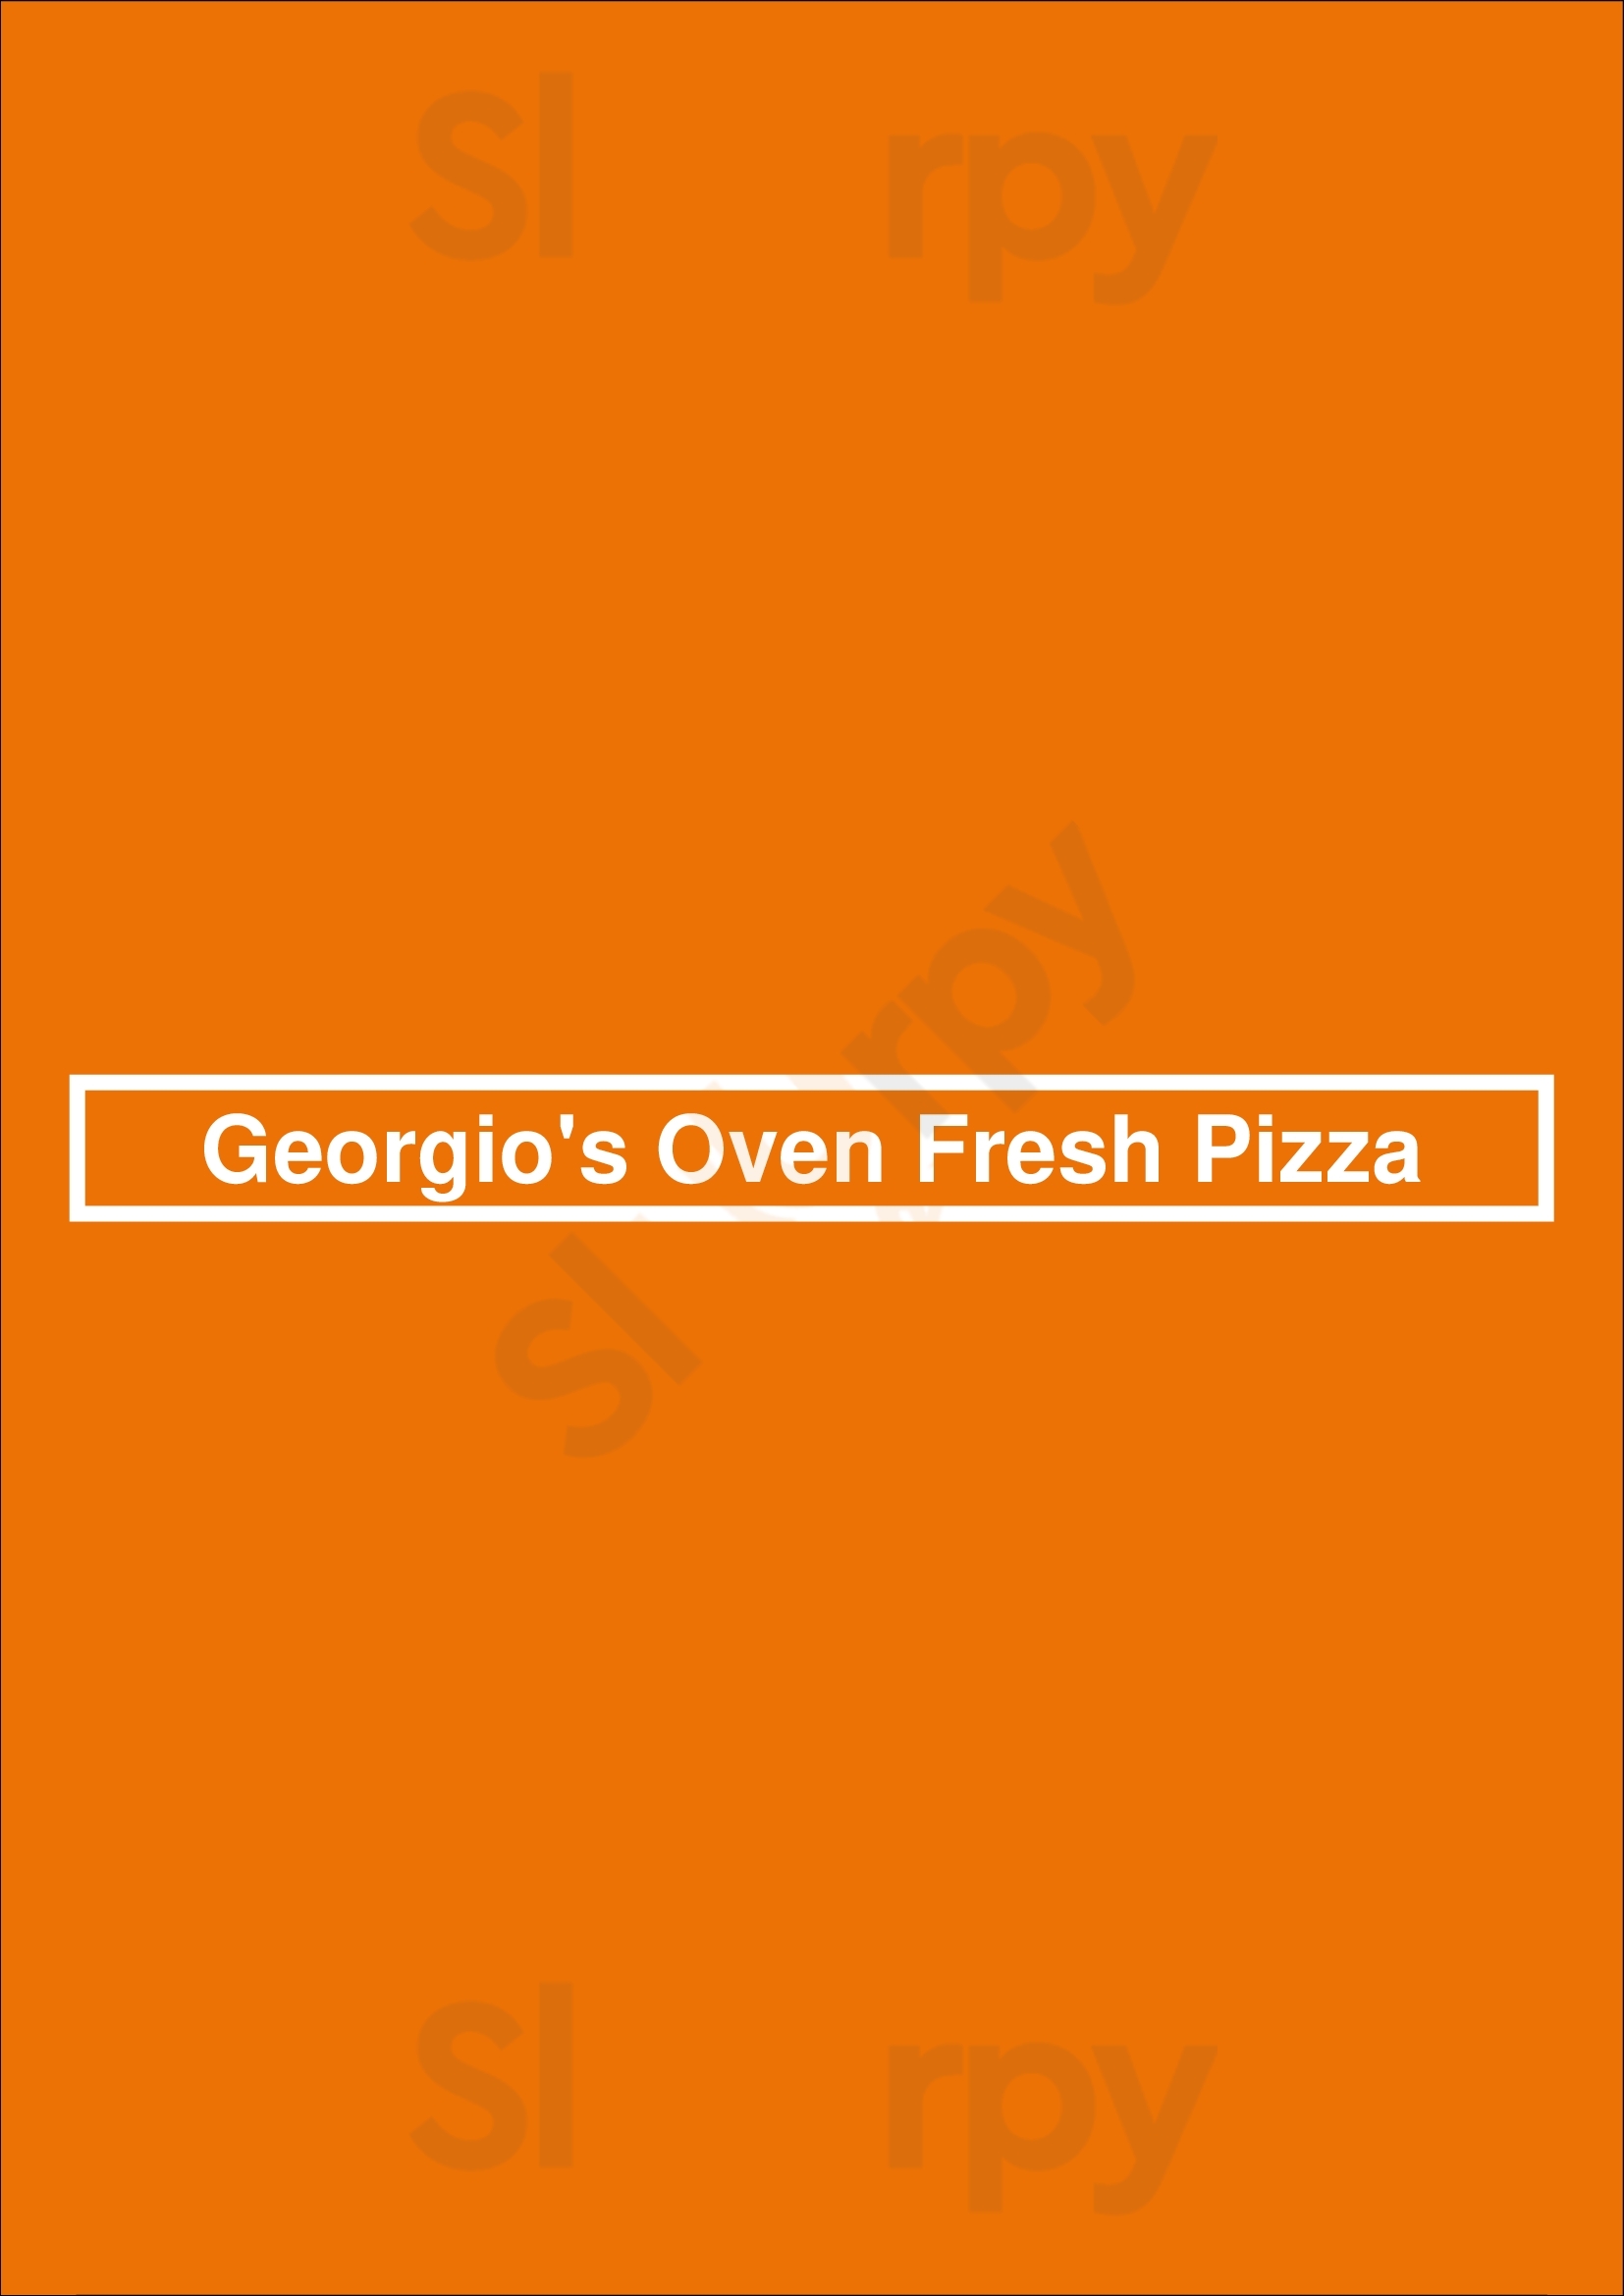 Georgio's Oven Fresh Pizza Cleveland Menu - 1